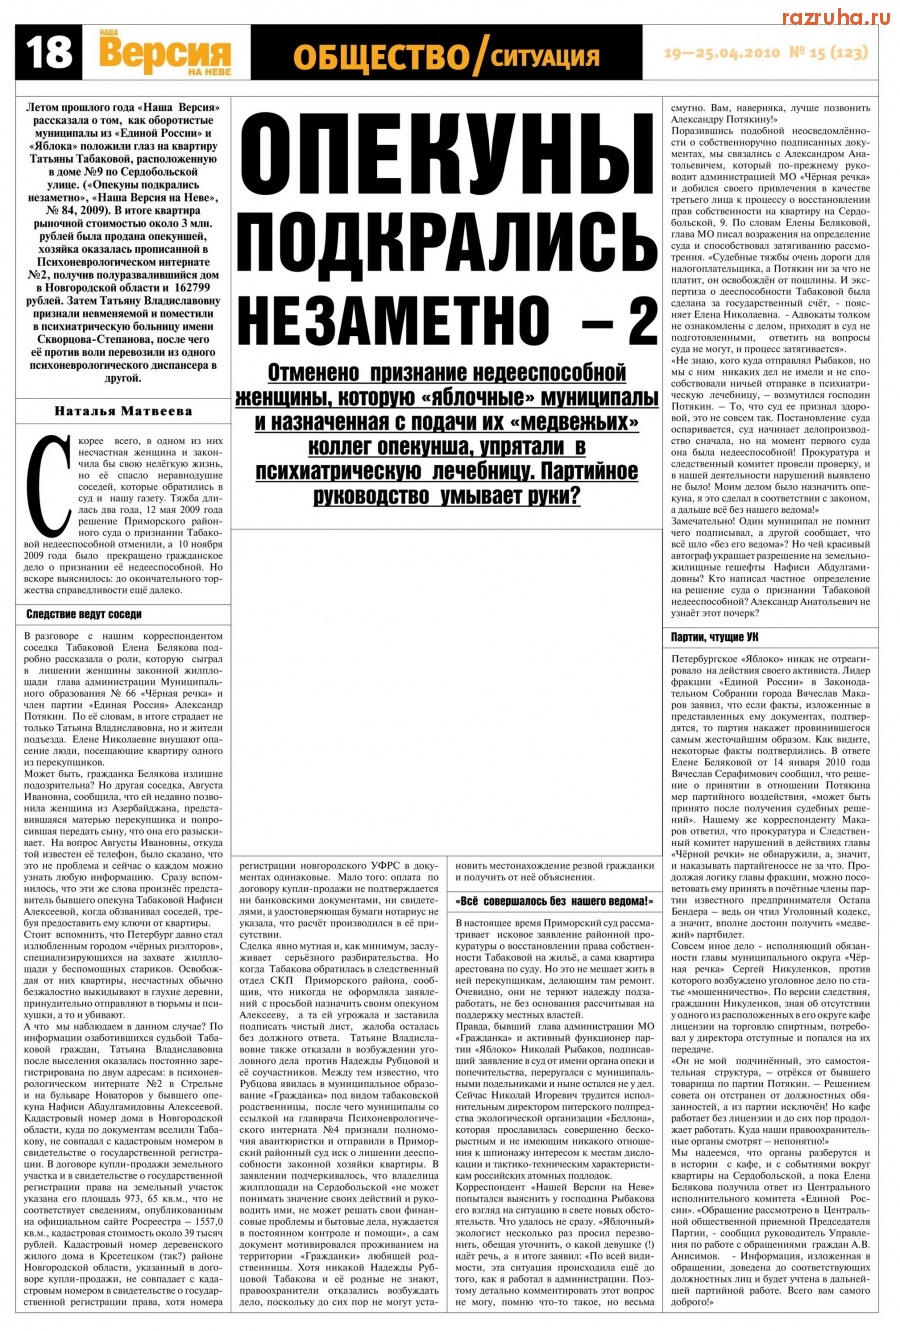 Санкт-Петербург - СМИ о нравах муниципальных депутатов Санкт-Петербурга